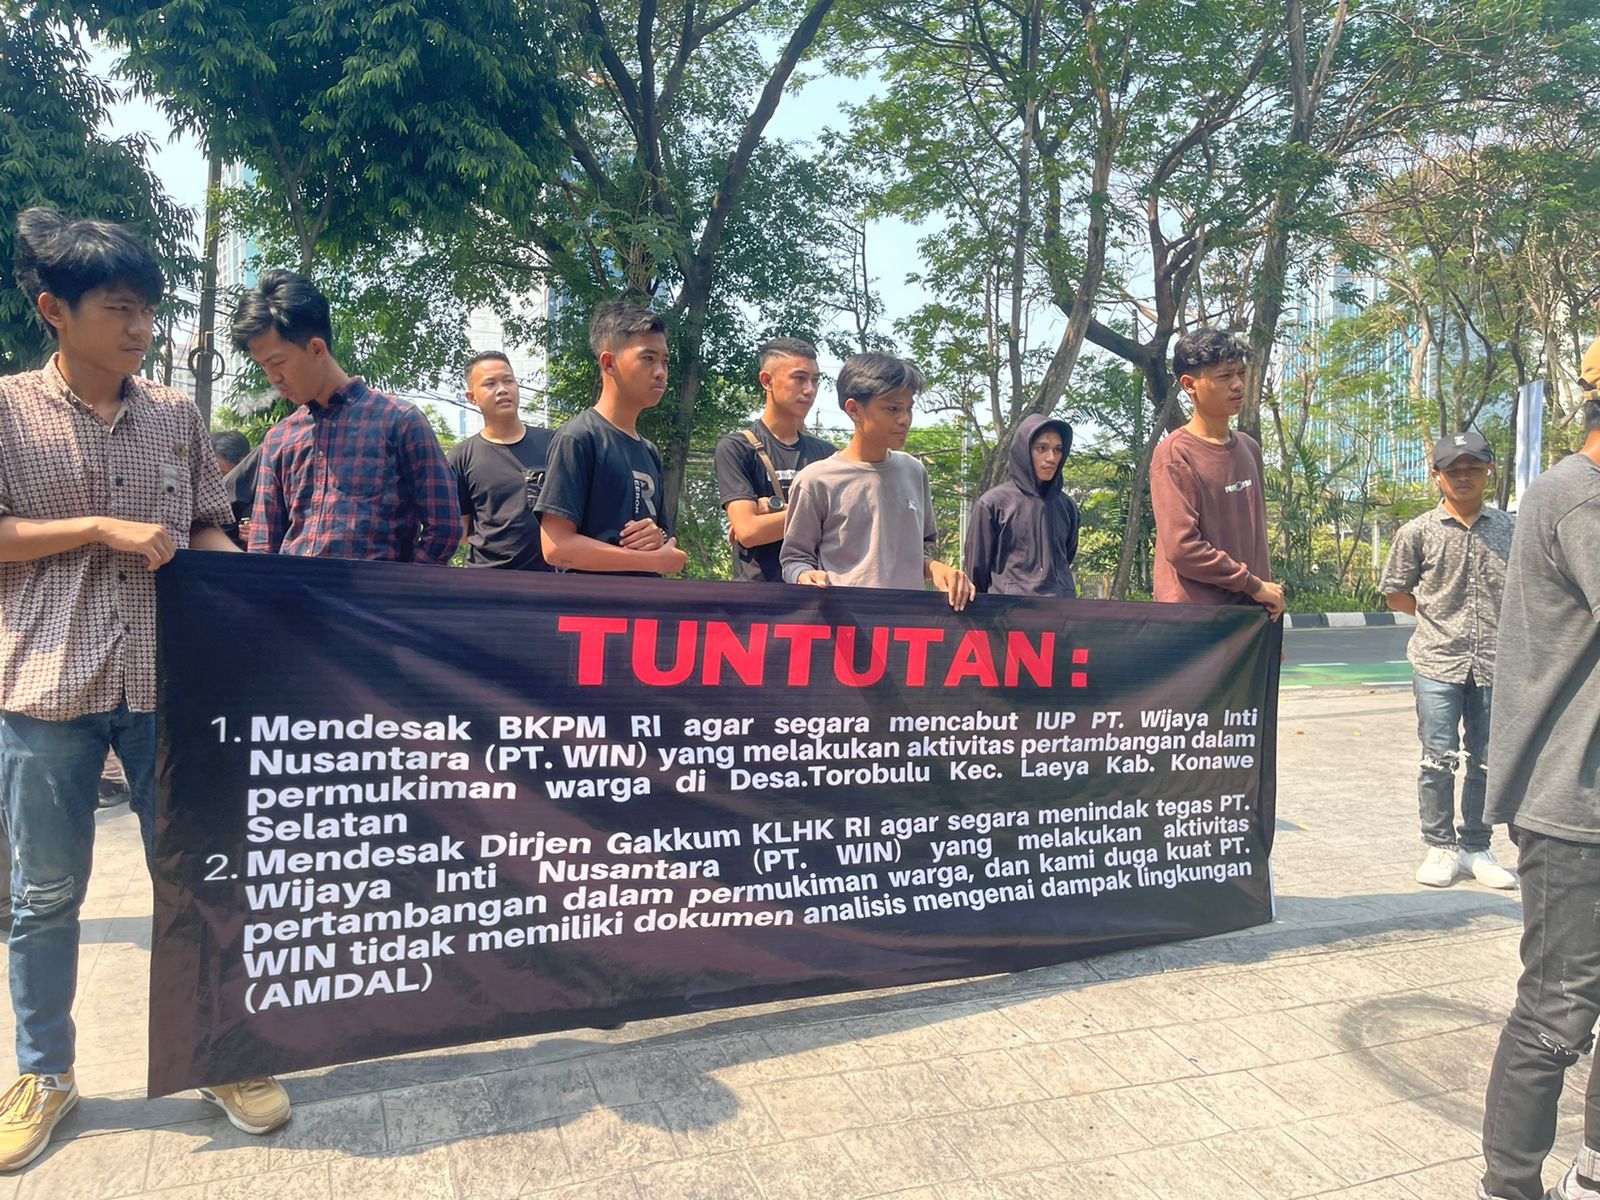 Aksi demonstrasi Konutara dan HP21N di Kantor Dirjen Gakkum KLHK RI, melaporkan dugaan aktivitas PT WIN di area pemukiman warga Desa Torobulu. 